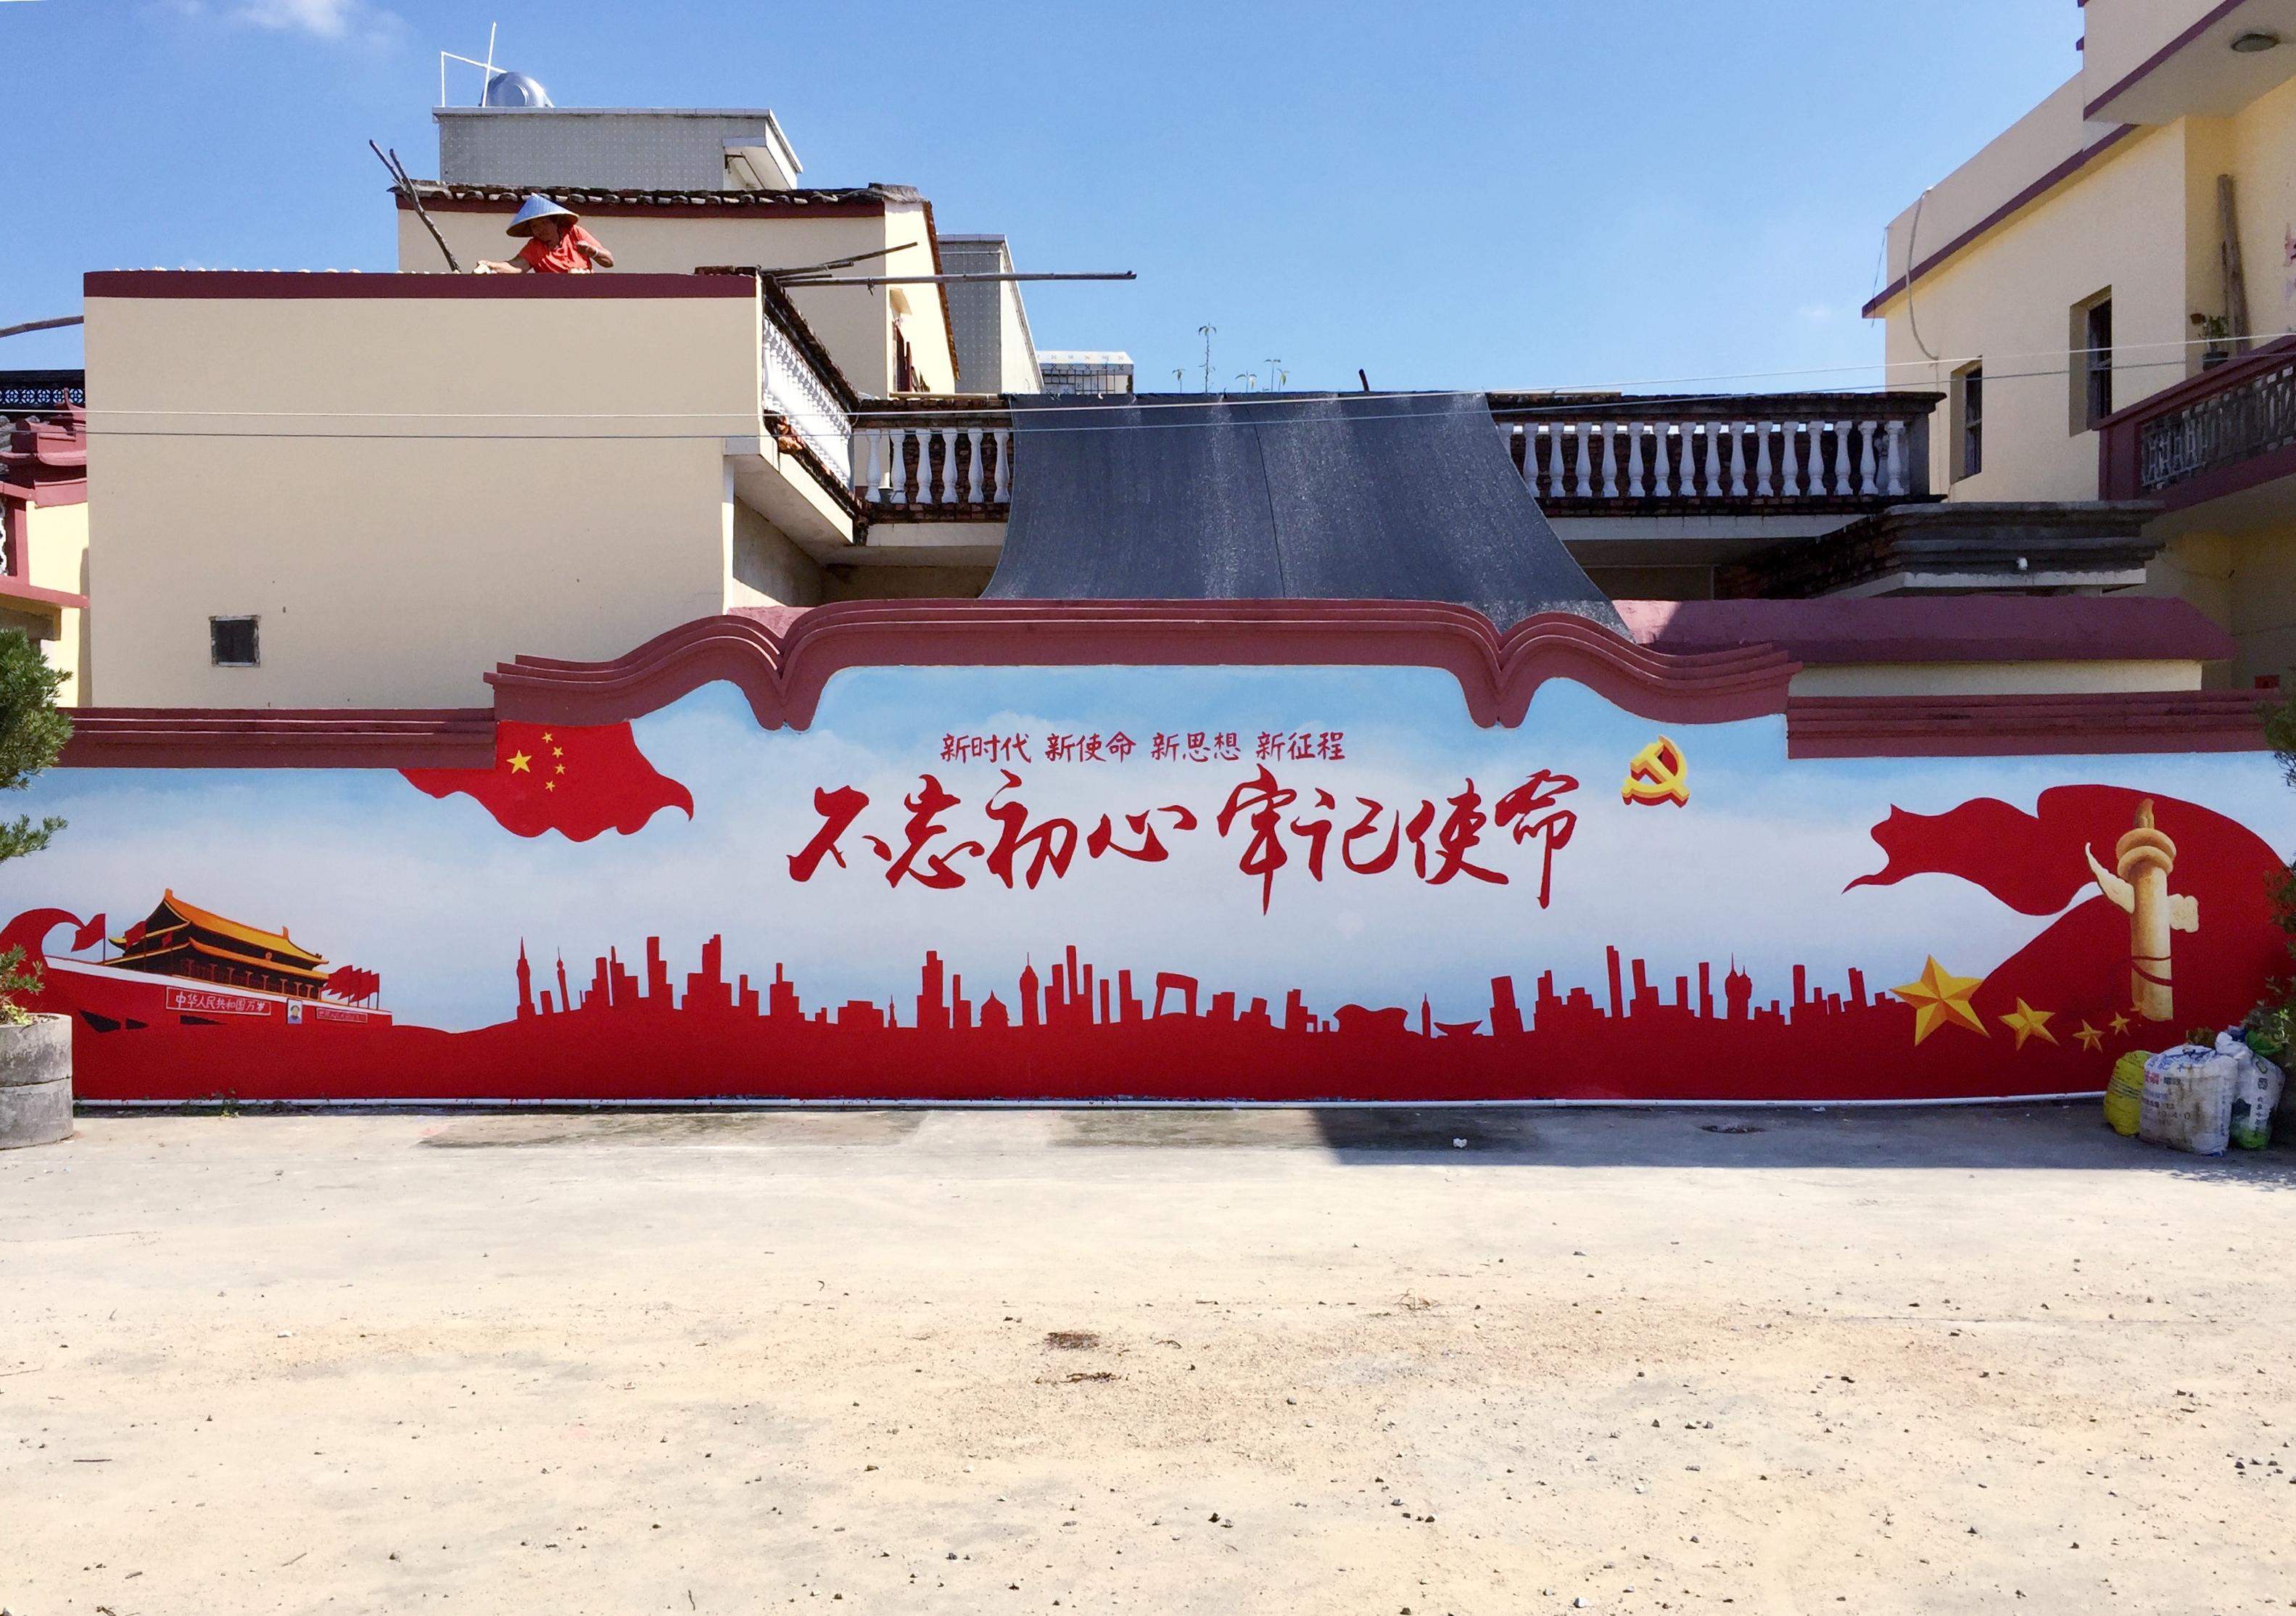 墙绘壁画手绘墙画汕尾新农村建设文化墙社区文化墙